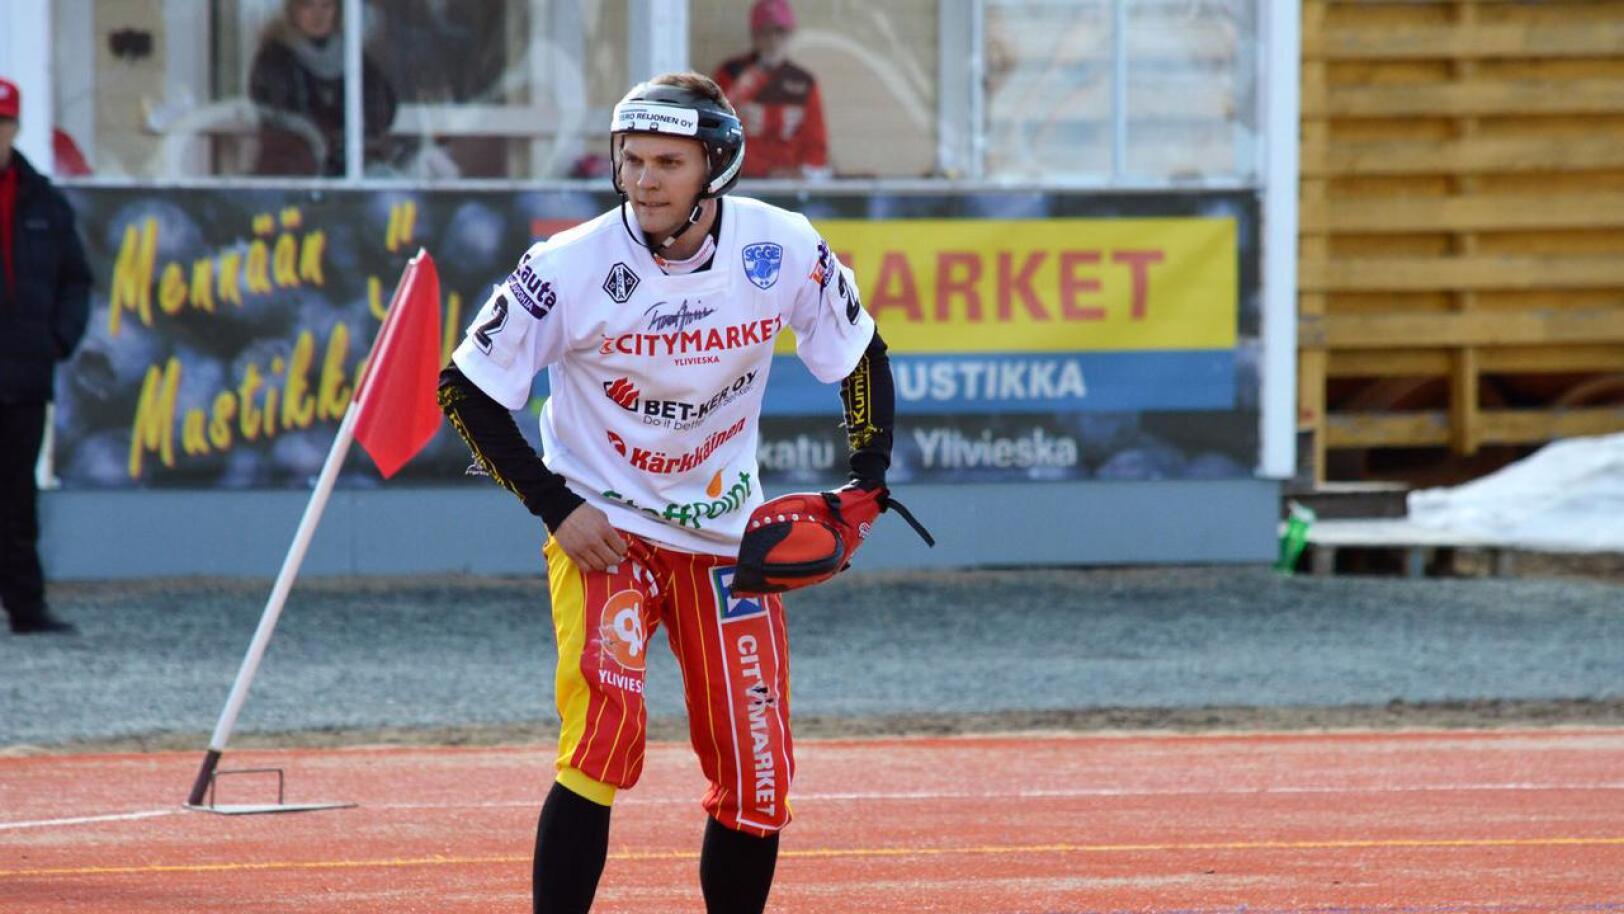 Tuomas Jussila loistaa ulkopelissä vuodesta toiseen. Kuula-kasvatti on pokannut kultainen räpylä -palkinnon neljä kertaa viimeisen viiden kauden aikana.